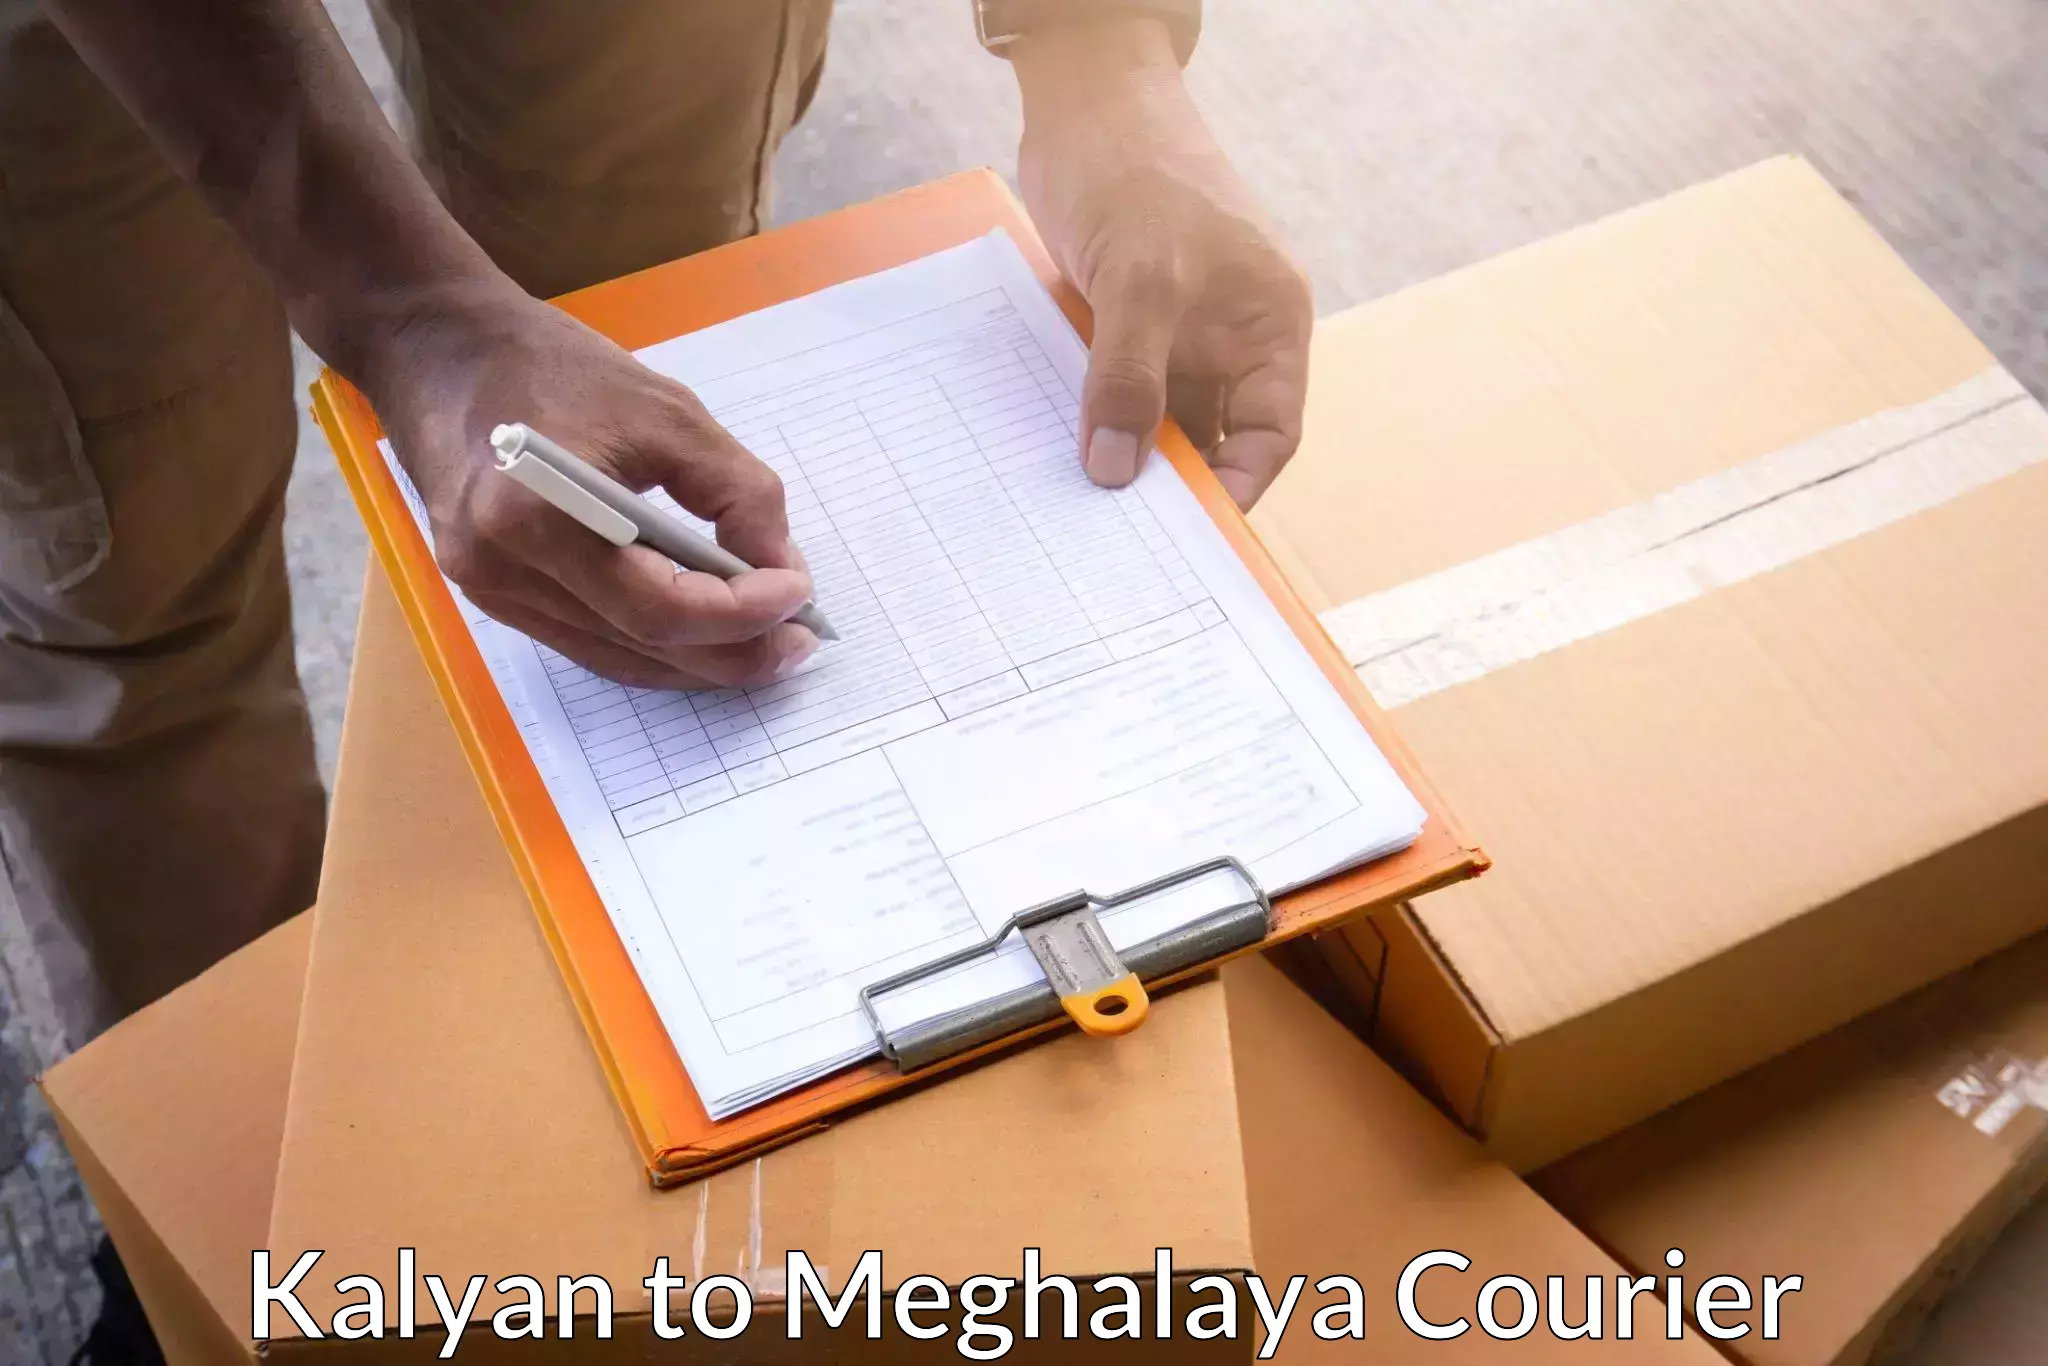 Digital courier platforms Kalyan to NIT Meghalaya